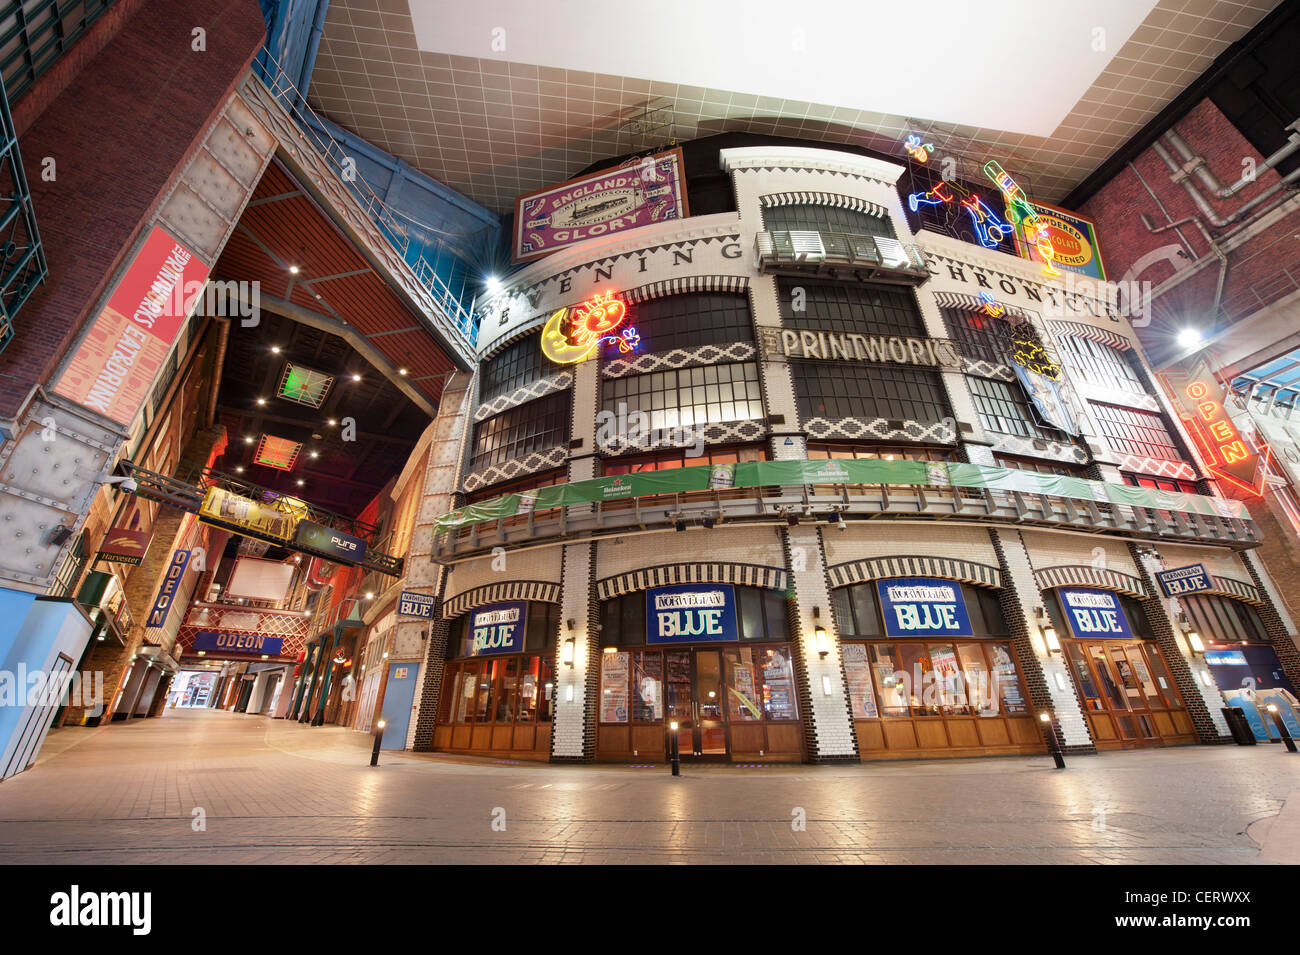 Le lieu de divertissement Printworks en Manchester contenant des restaurants, bars et un cinéma Odéon. Banque D'Images